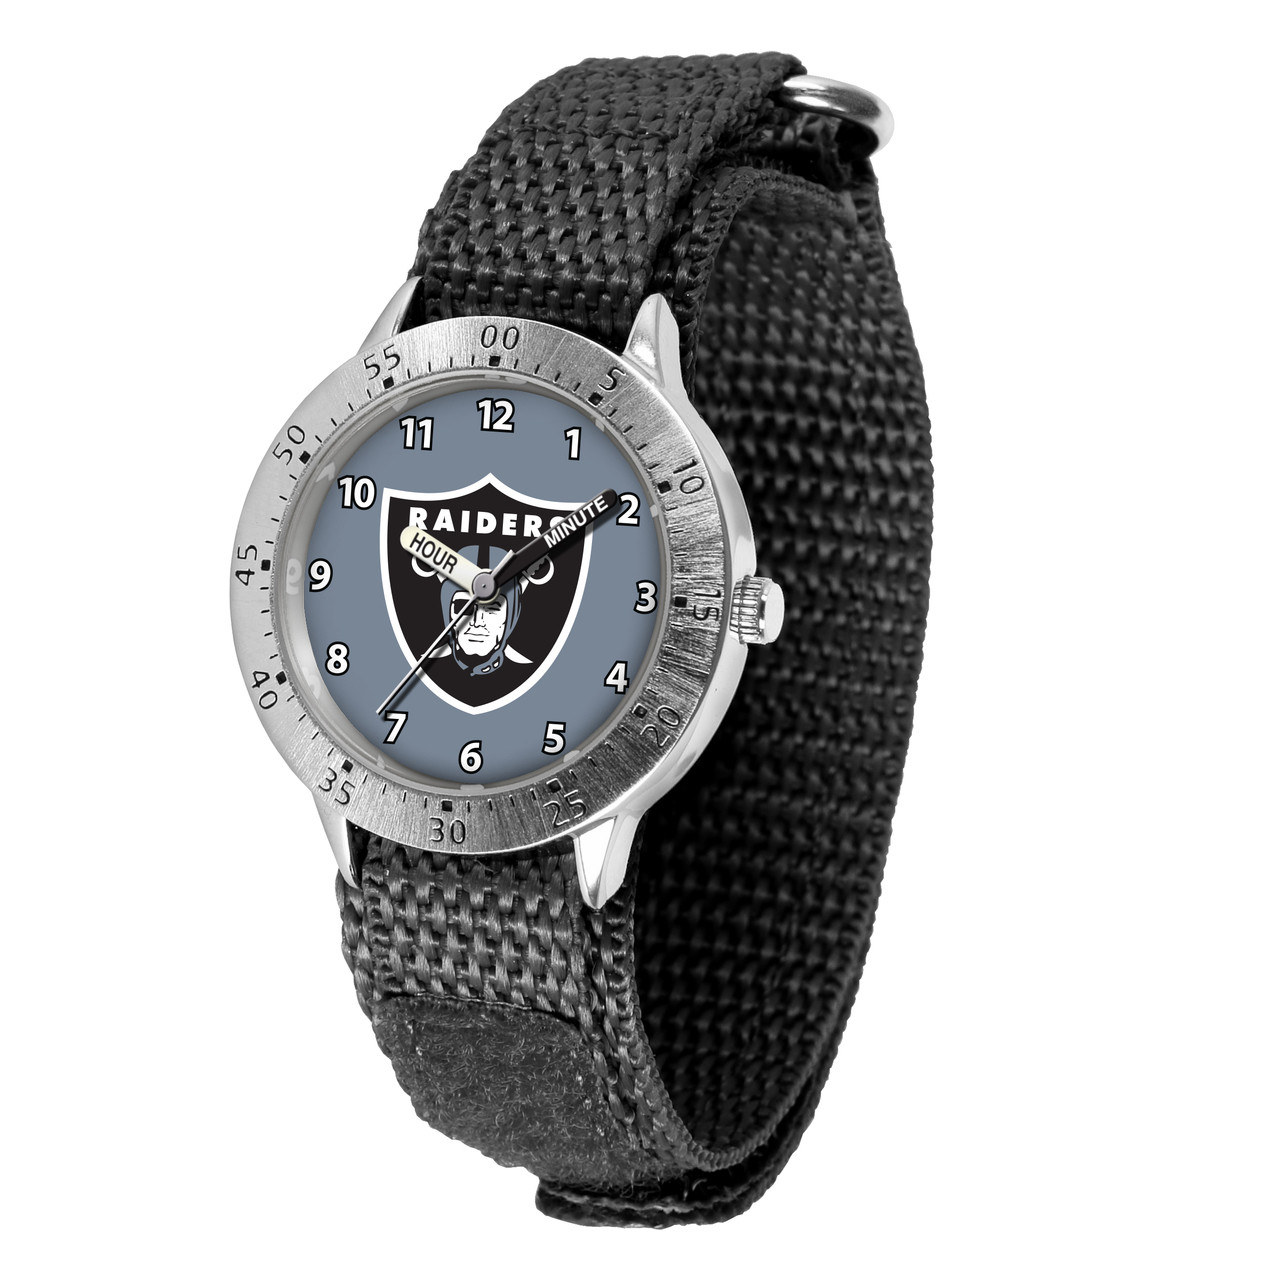 Las Vegas Raiders Men's Watch - NFL Varsity Series - Game Time Watches